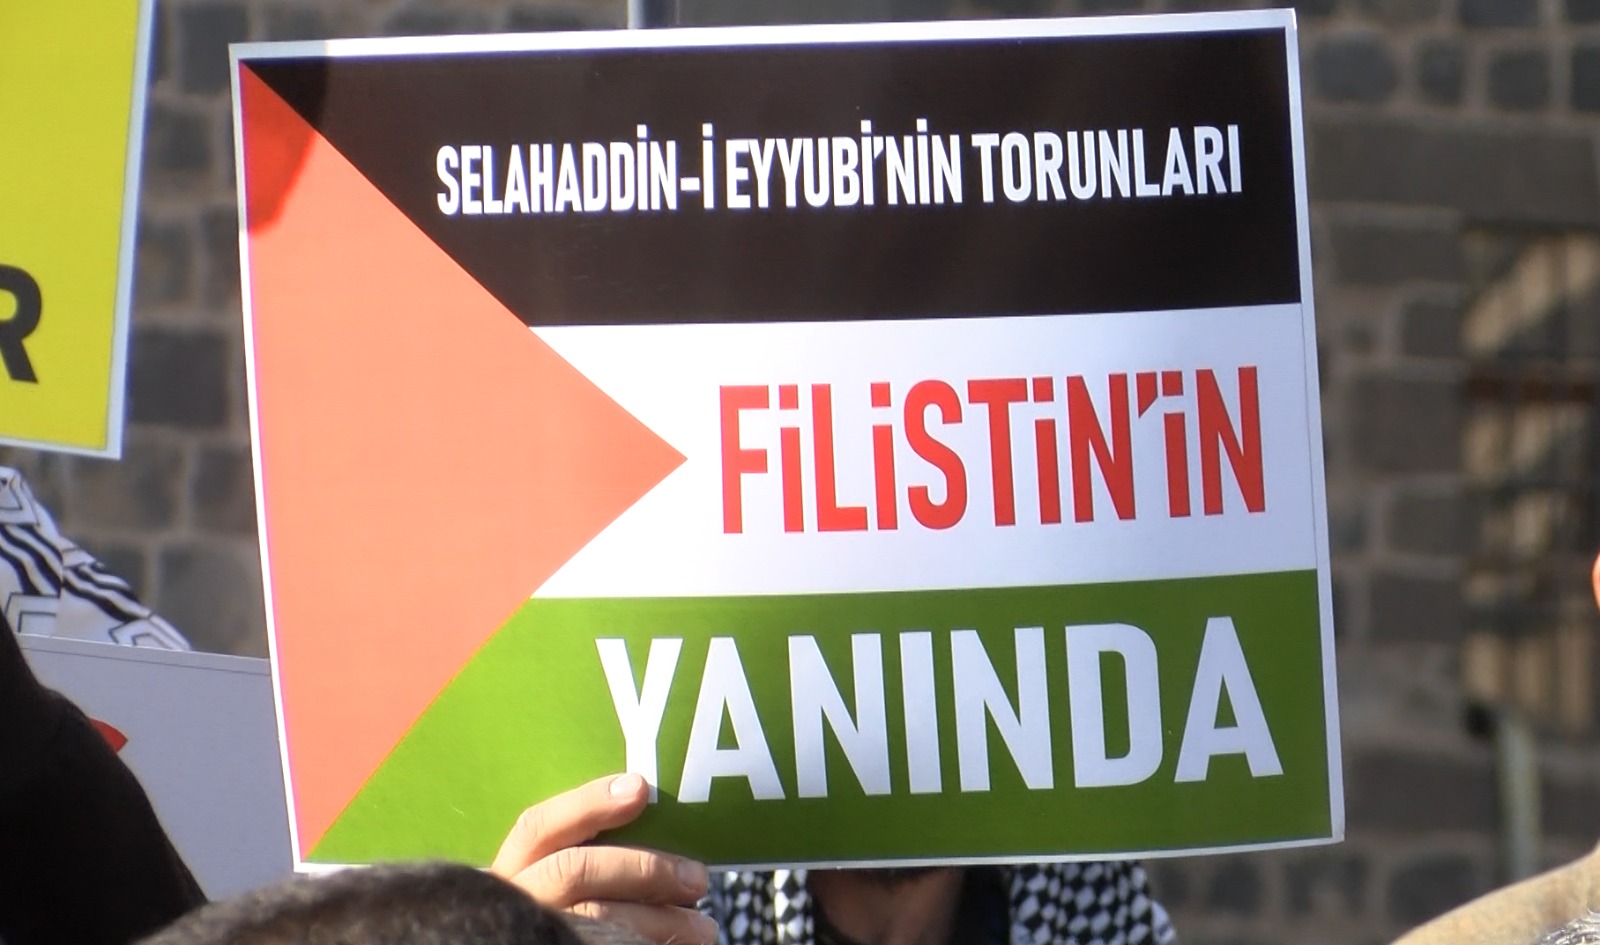 diyarbakirda-cuma-namazi-cikisi-israil-protestosu-yenicag6.jpg